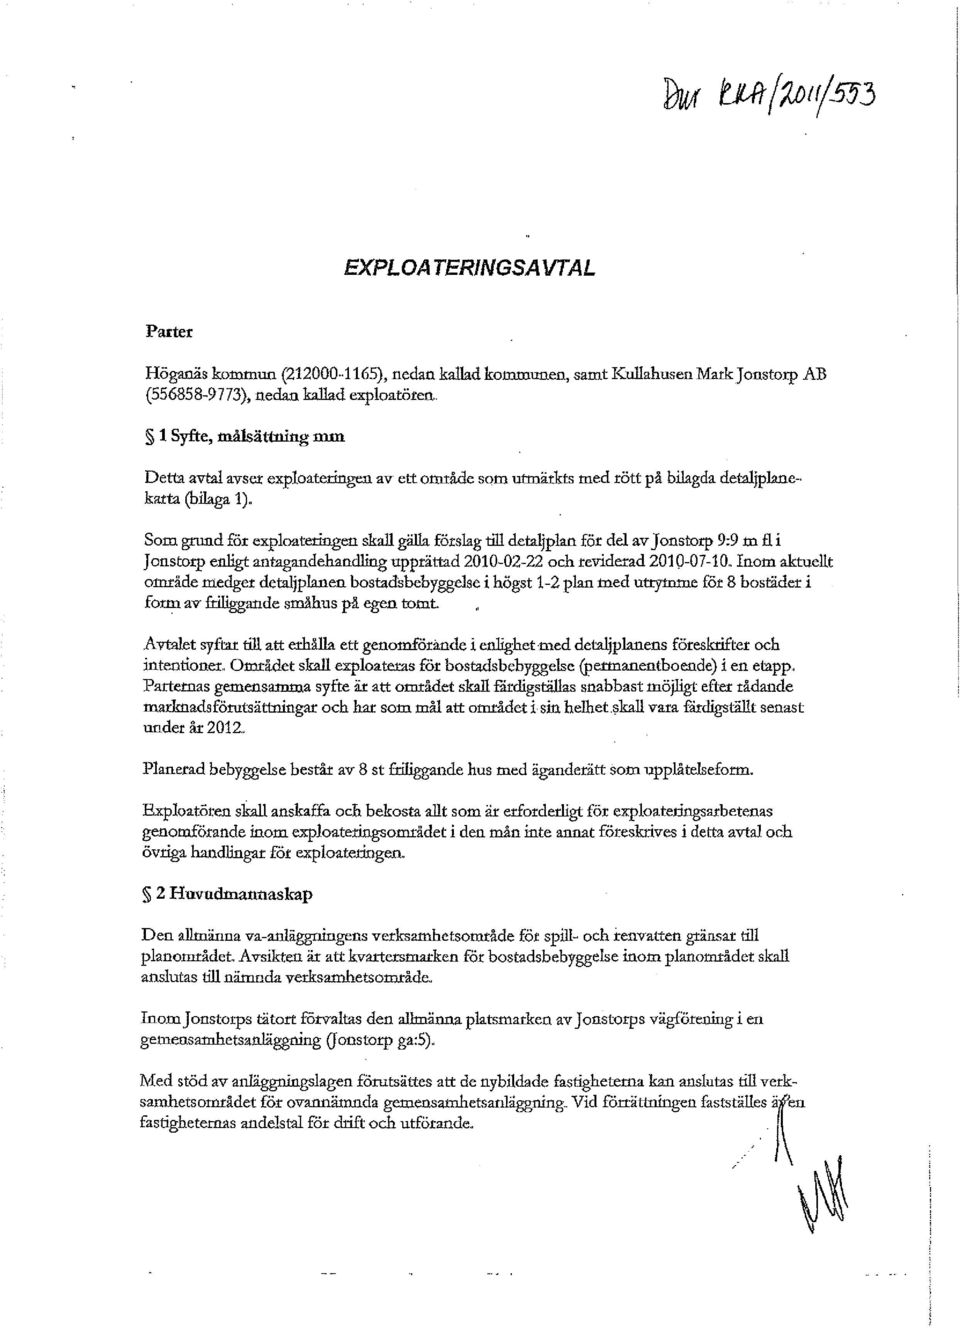 . Som grund för exploateringen skall gälla förslag till detaljplan för del av Jonstorp 9:9 m fl i Jonstorp enligt antagandehandling upprättad 2010-02-22 och reviderad 2010-07-10.